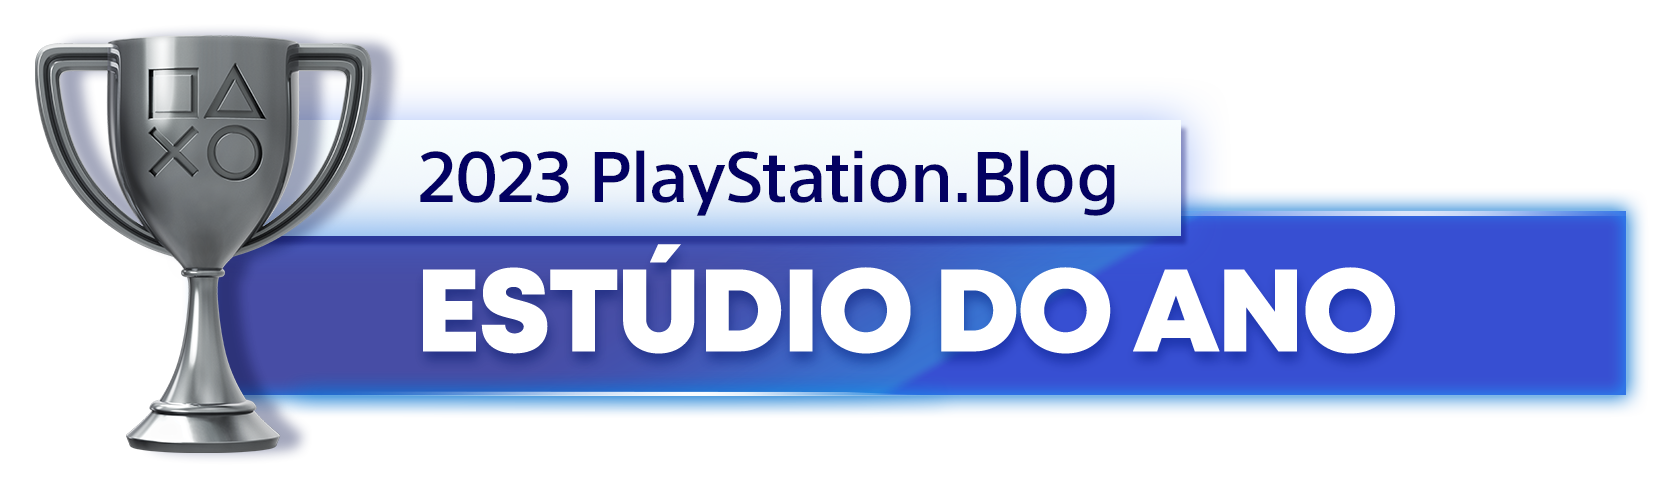  "Troféu de Prata para o vencedor da categoria Estúdio do Ano de 2023 do PlayStation Blog"